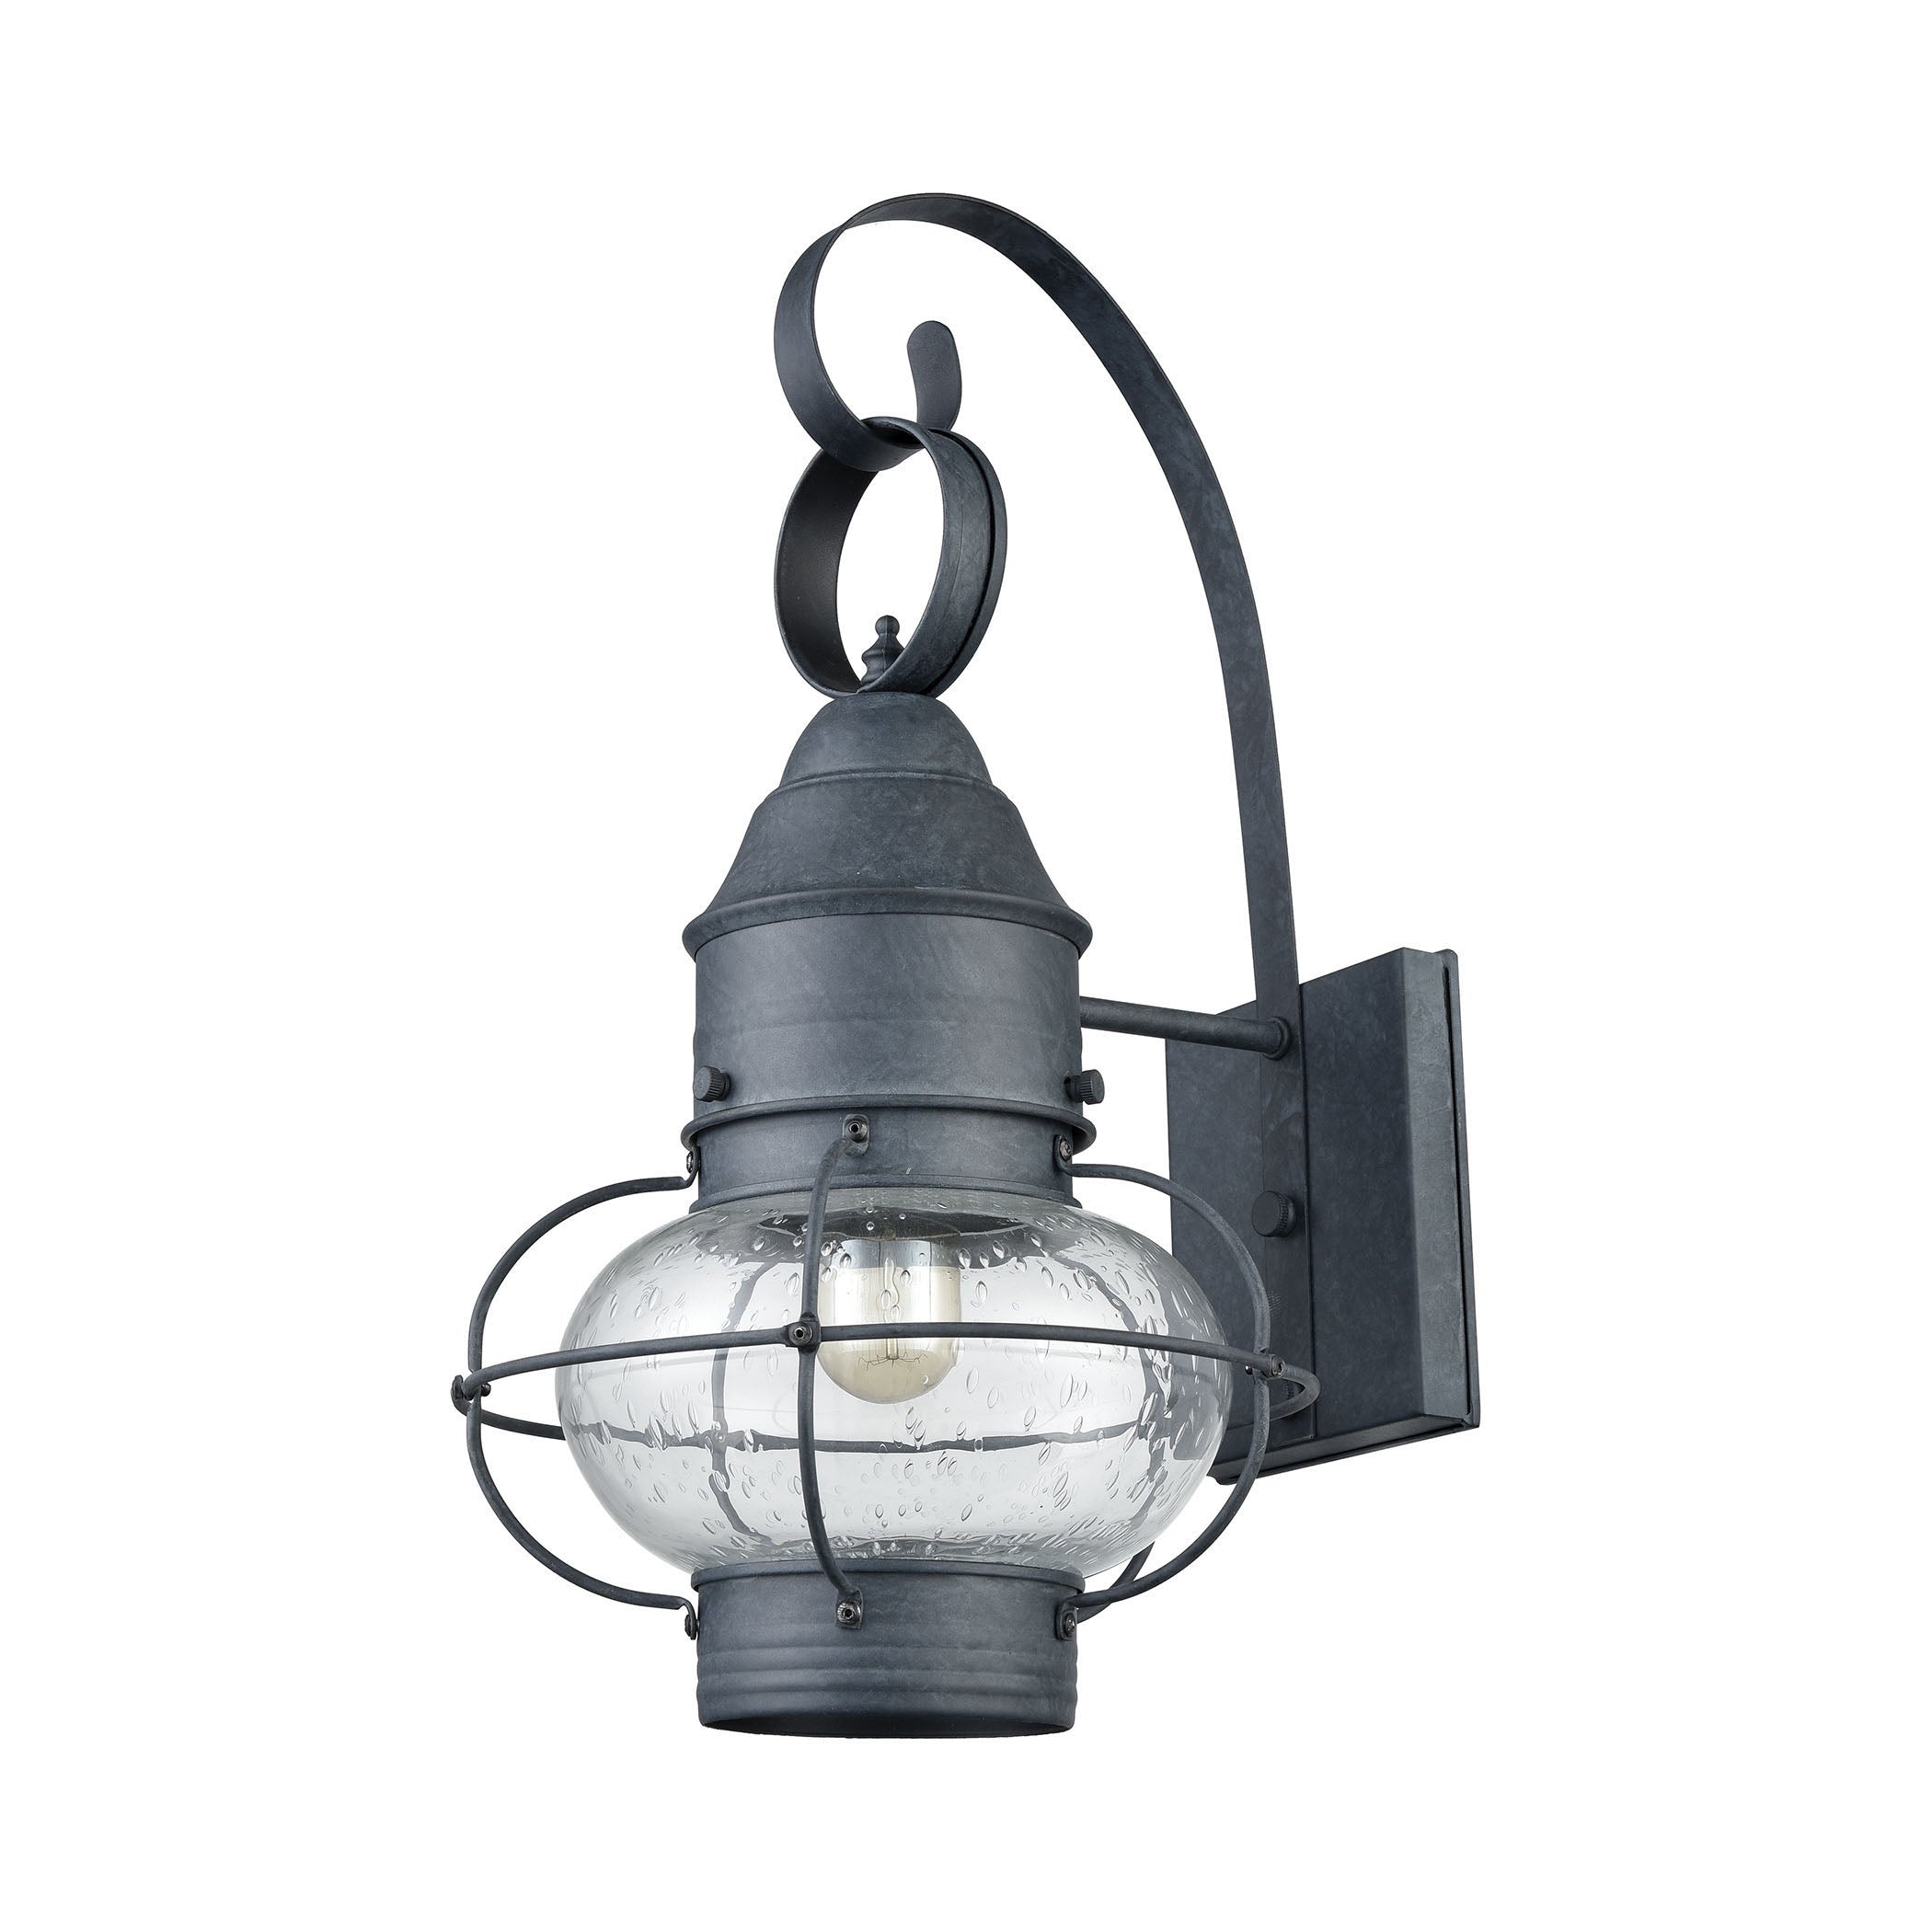 ELK Lighting 57171/1 Onion 1-Light Outdoor Wall Lantern in Aged Zinc